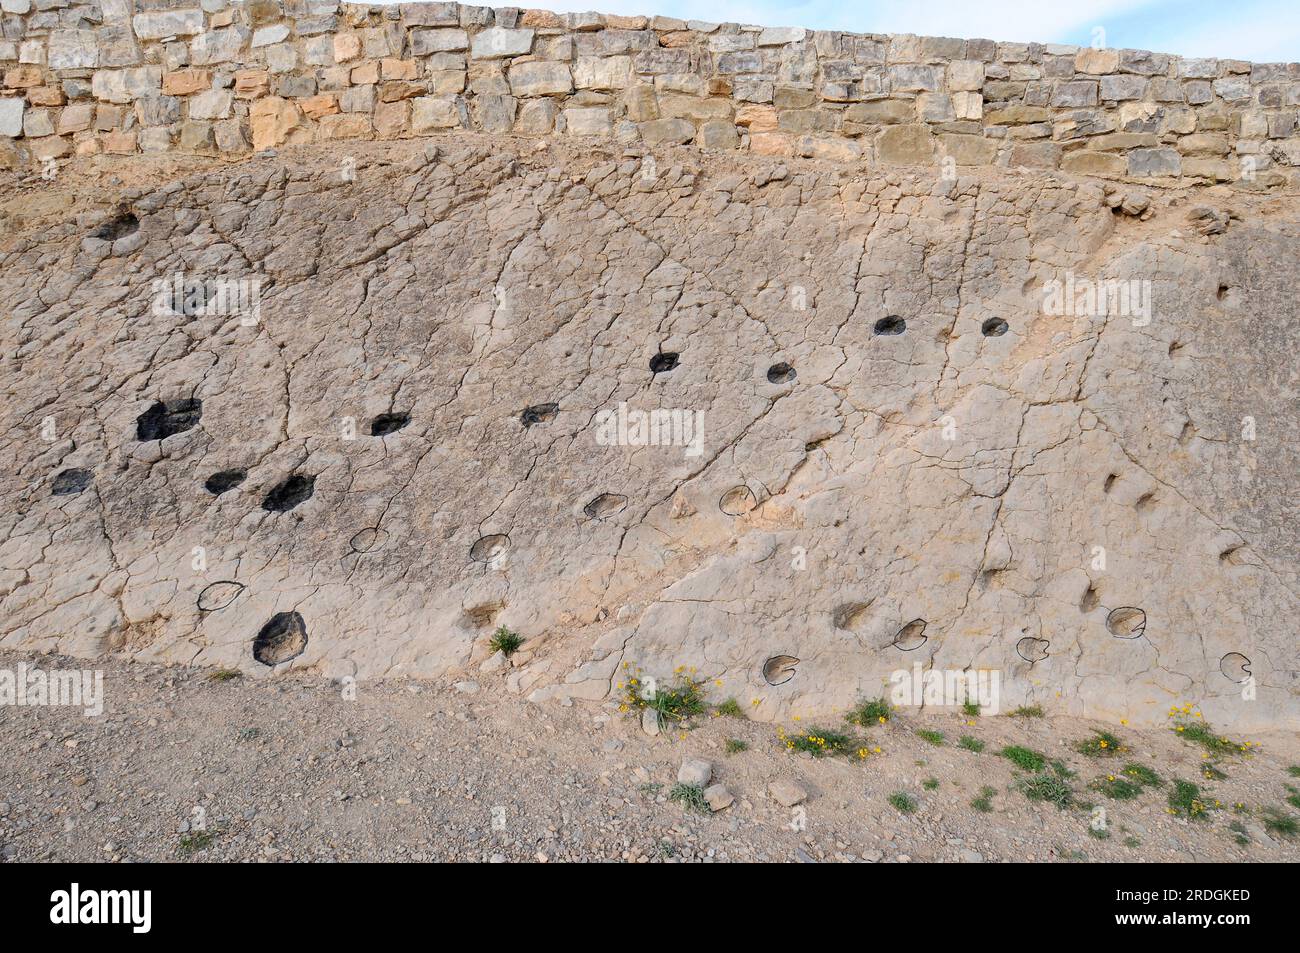 Icnofósiles o trazas de fósiles de huellas de mamíferos de artiodáctilos. Este Sitio Paleontológico (La Fondota) se encuentra en Abiego, Huesca, Aragón, España. Foto de stock